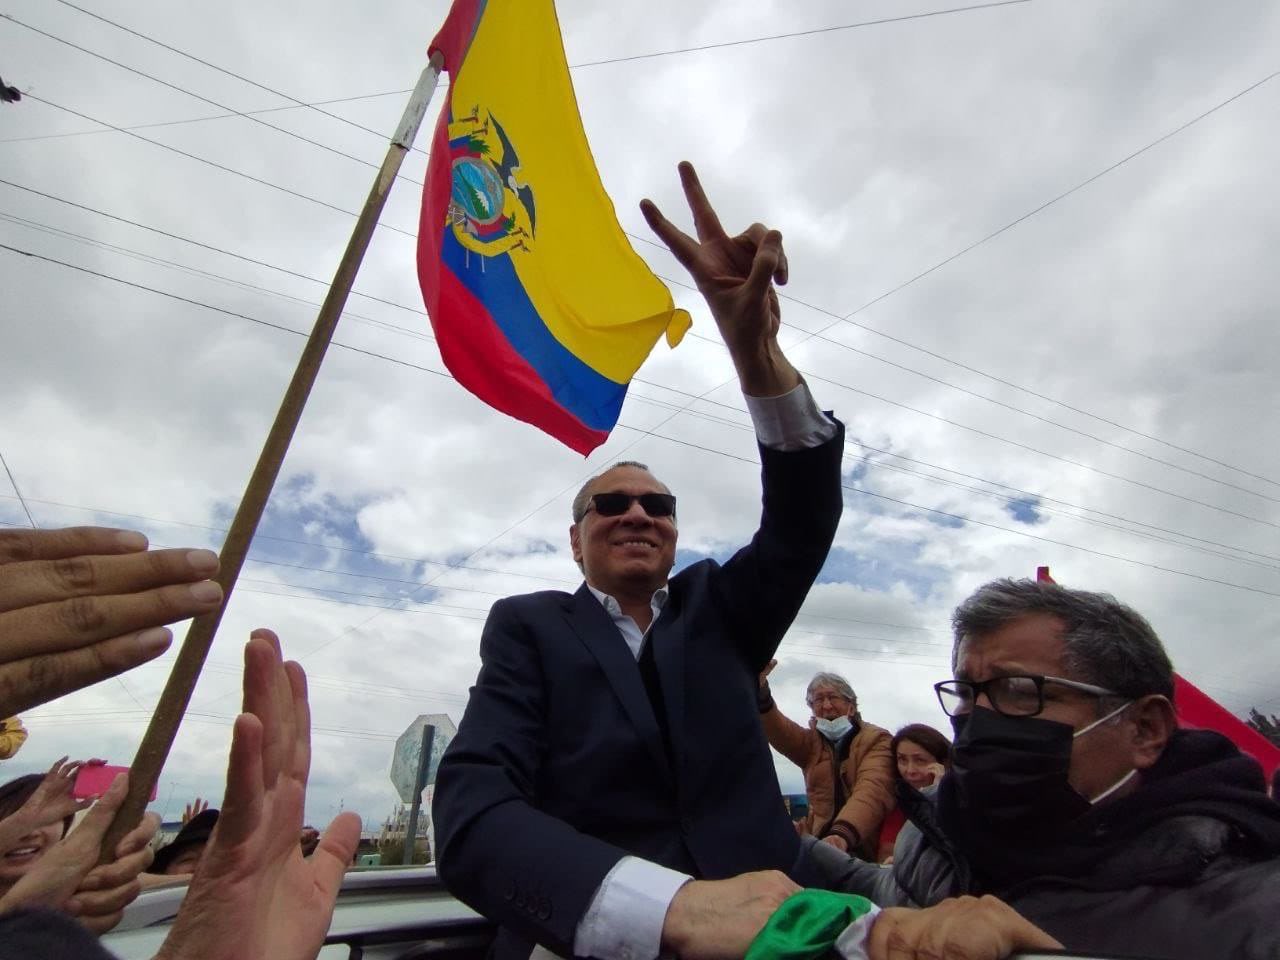 A su salida de la prisión, Jorge Glas recorrió 300 kilómetros en una caravana con simpatizantes correístas. (Foto: Twitter de Rafael Correa).